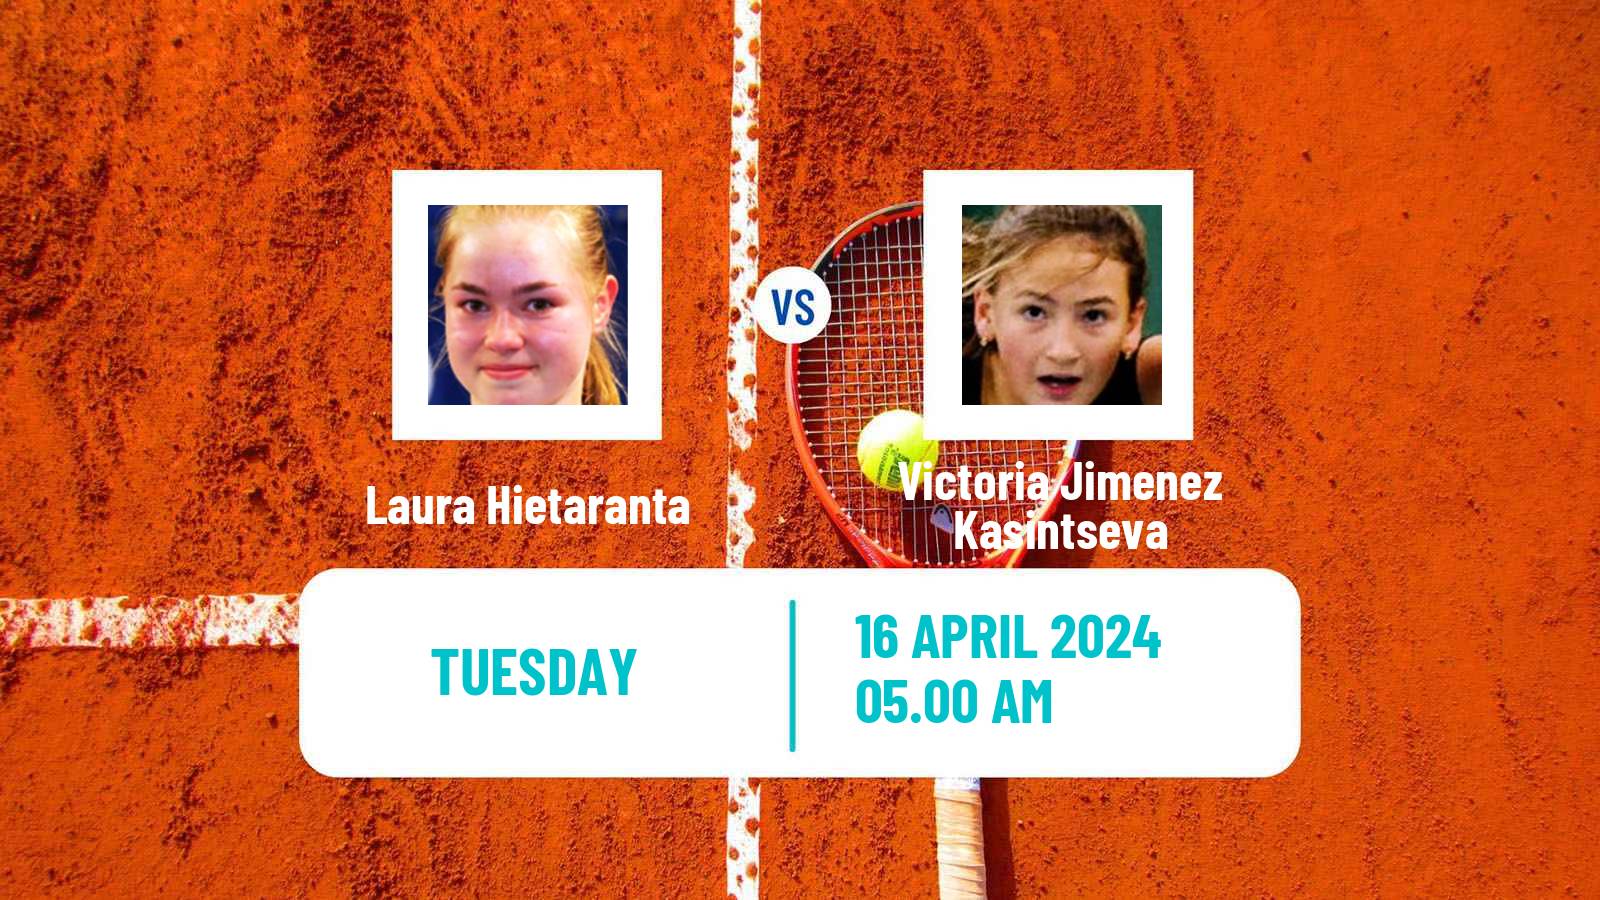 Tennis ITF W35 Santa Margherita Di Pula 4 Women Laura Hietaranta - Victoria Jimenez Kasintseva